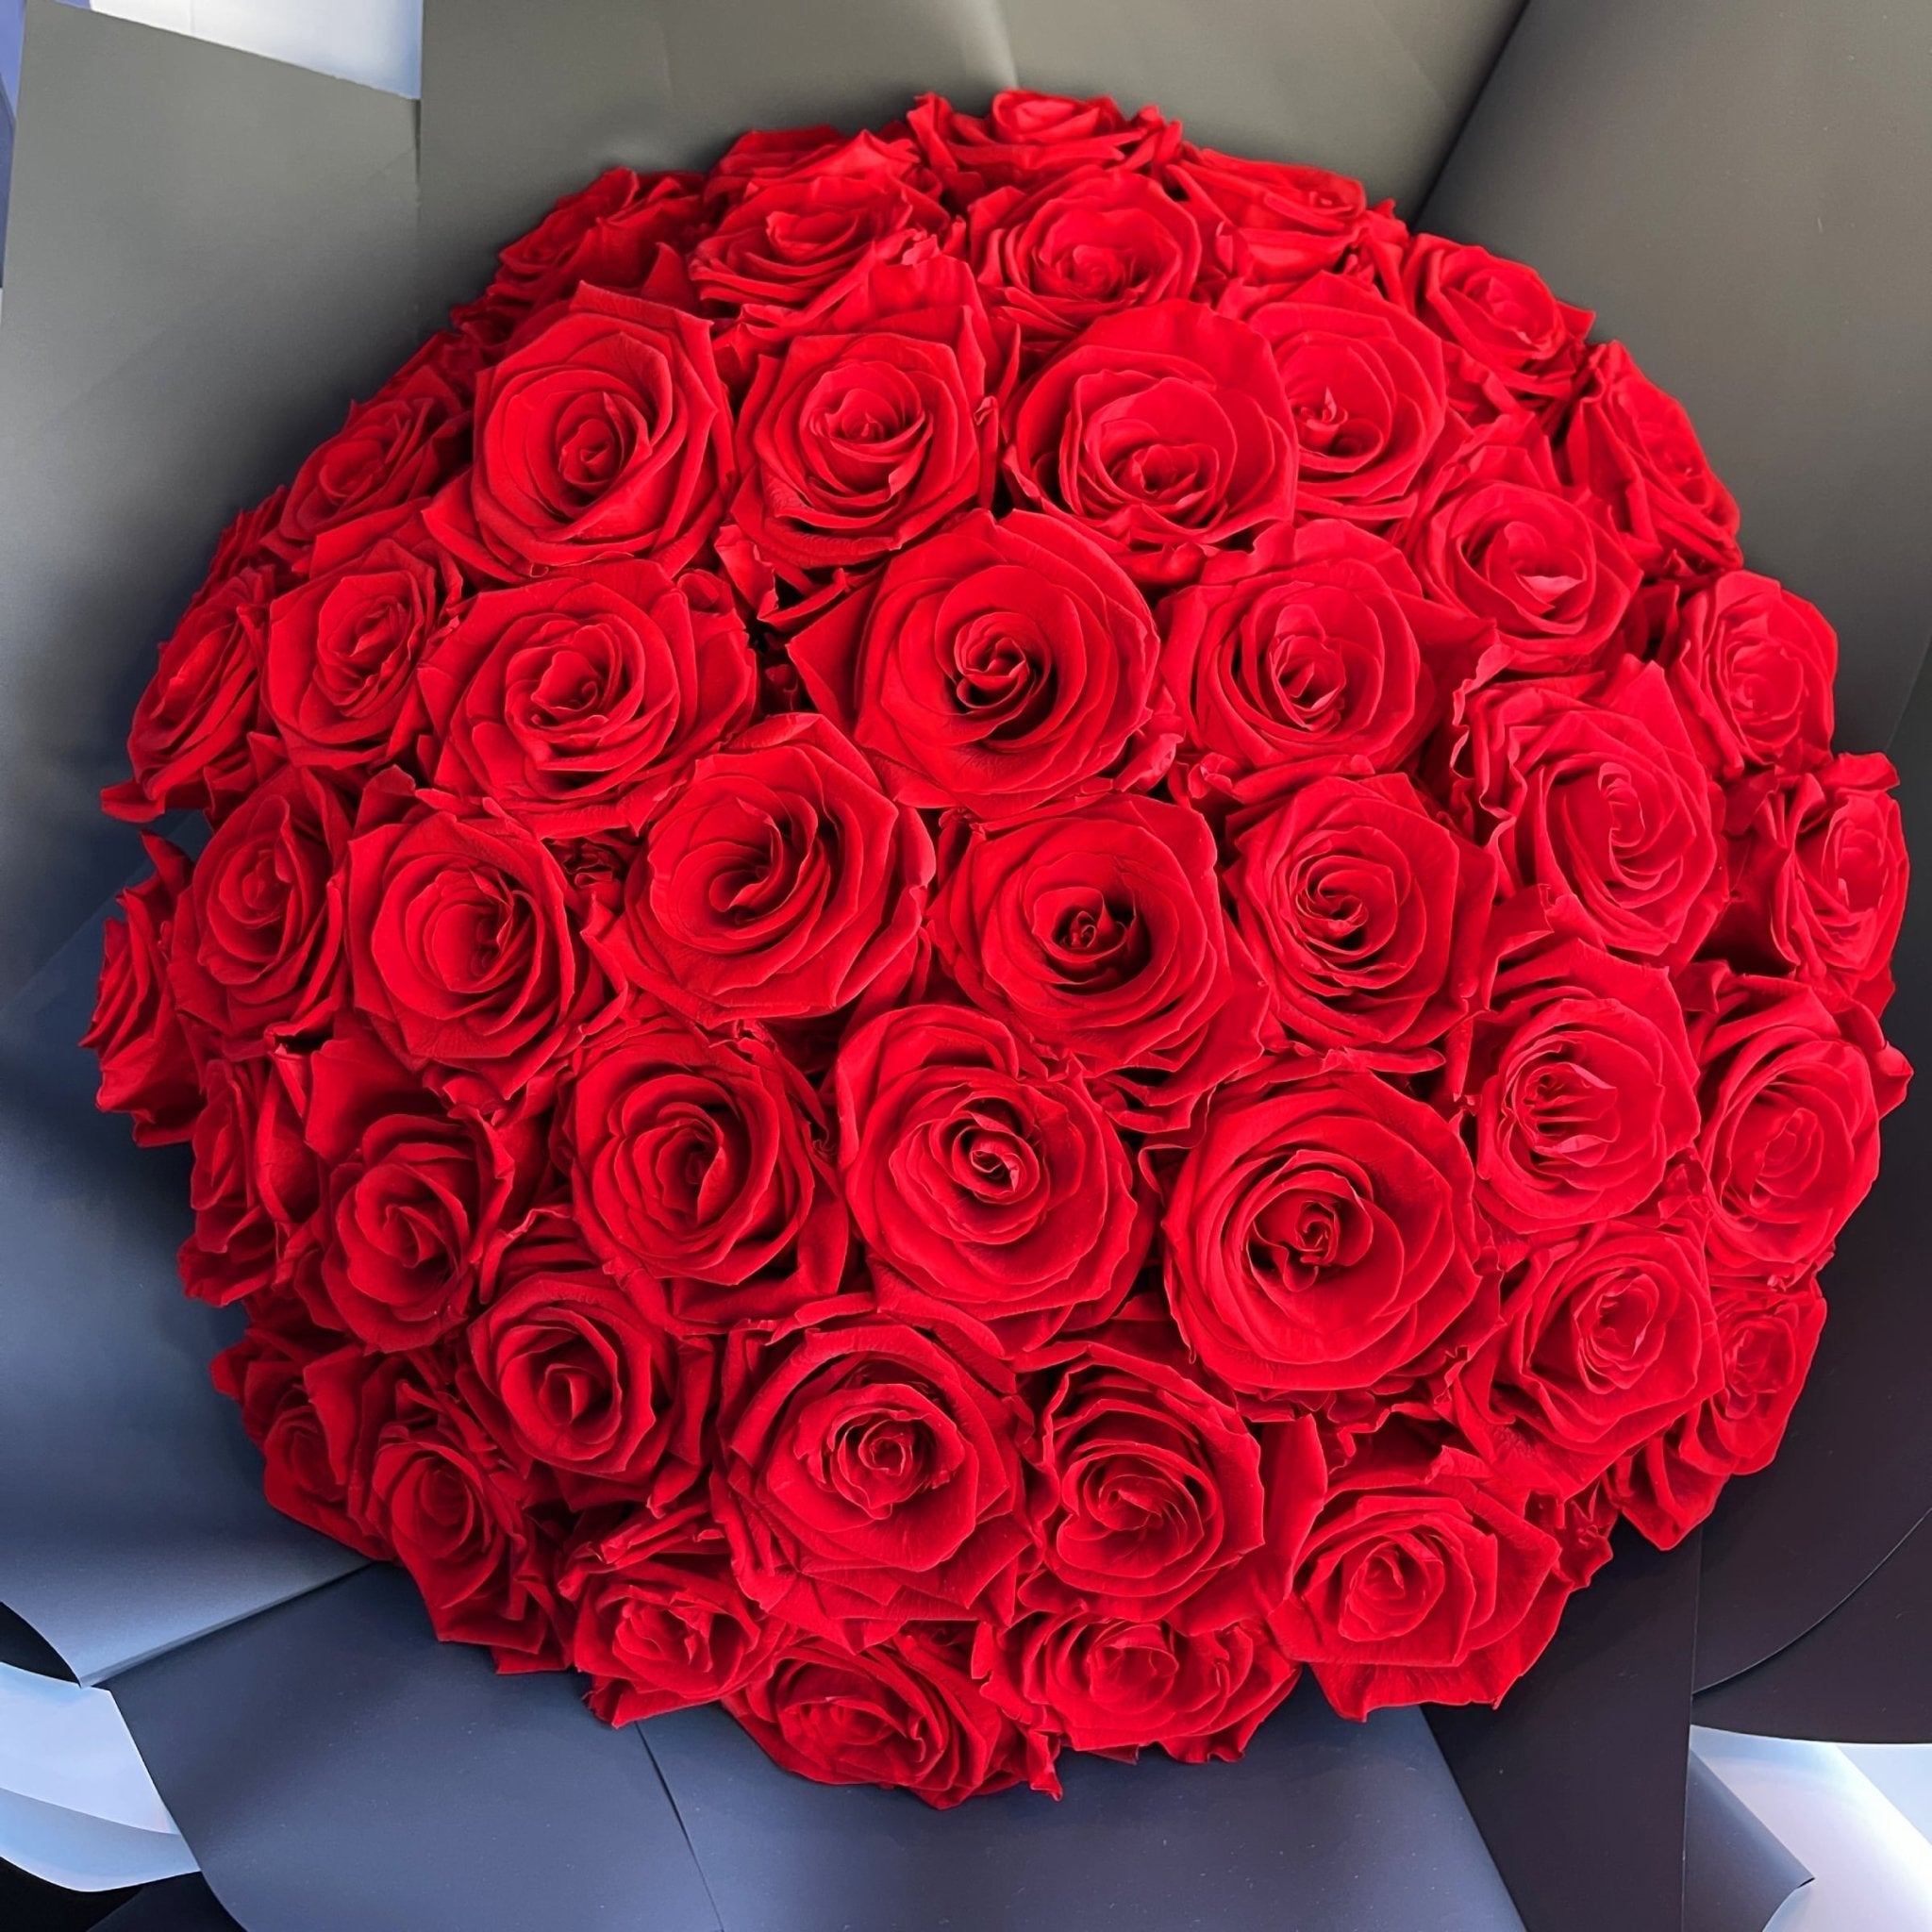 RED ROSES BOUQUET - Bouquet Of Red Roses, bouquet rose